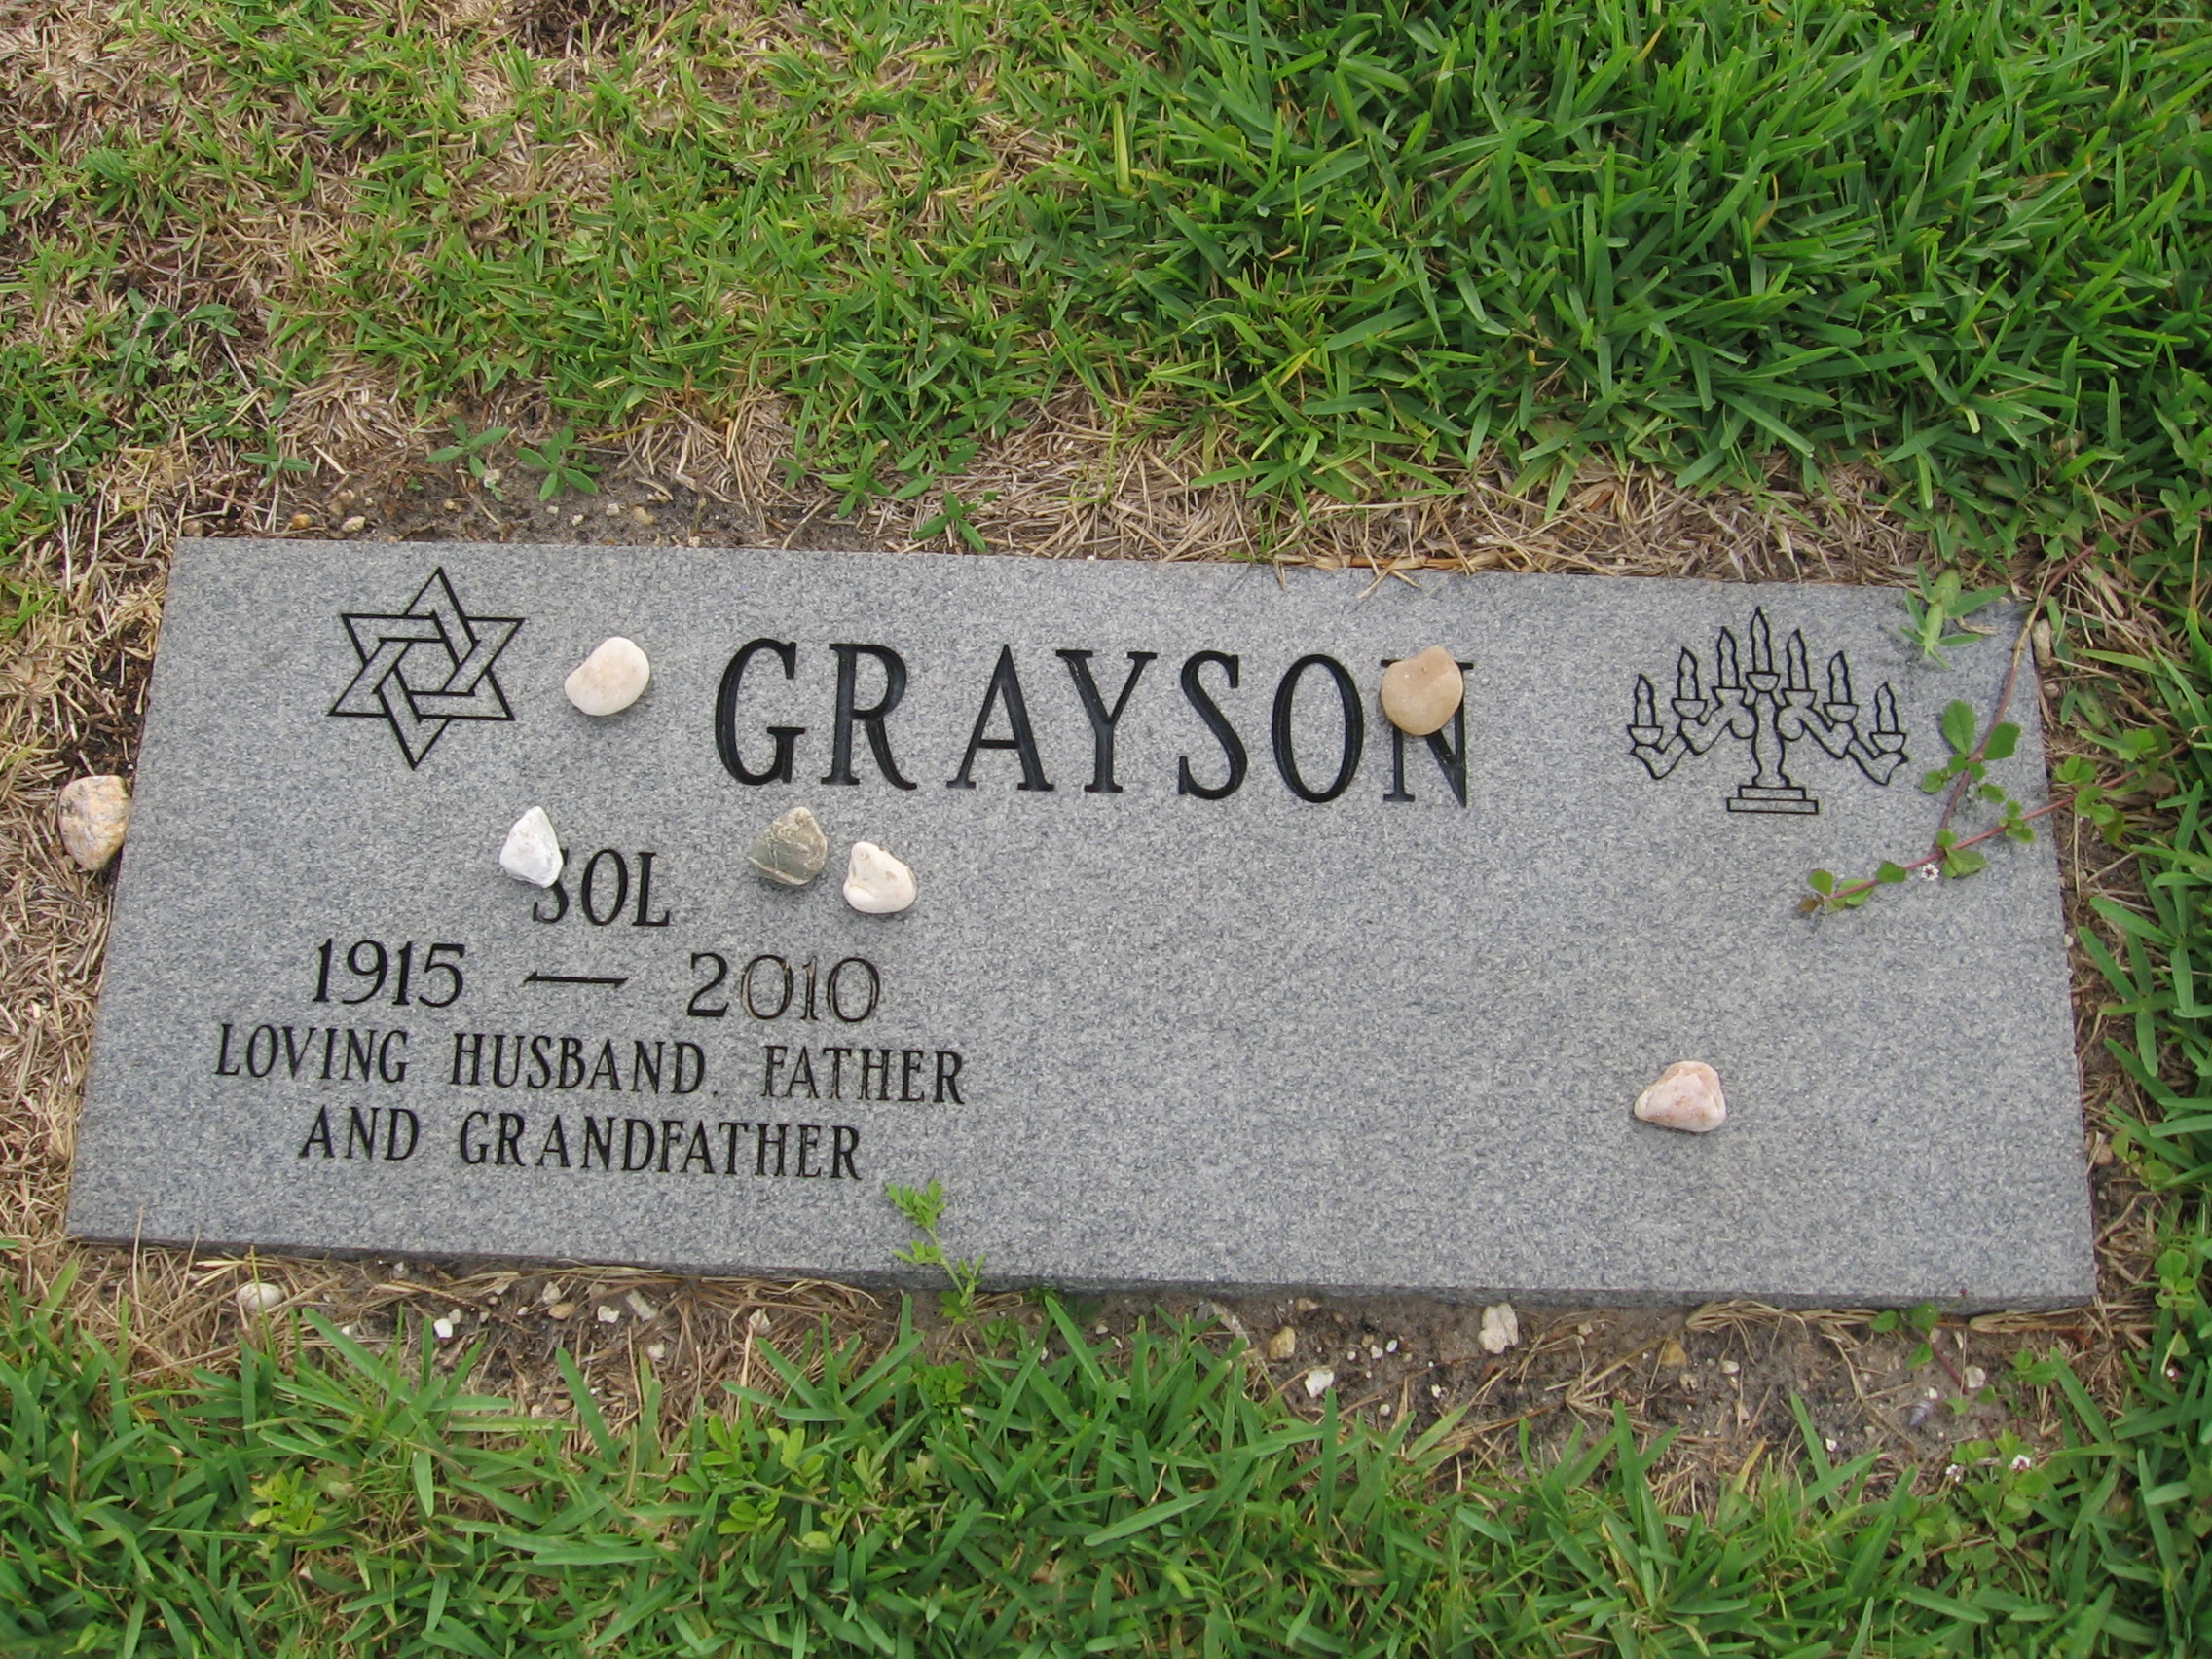 Sol Grayson